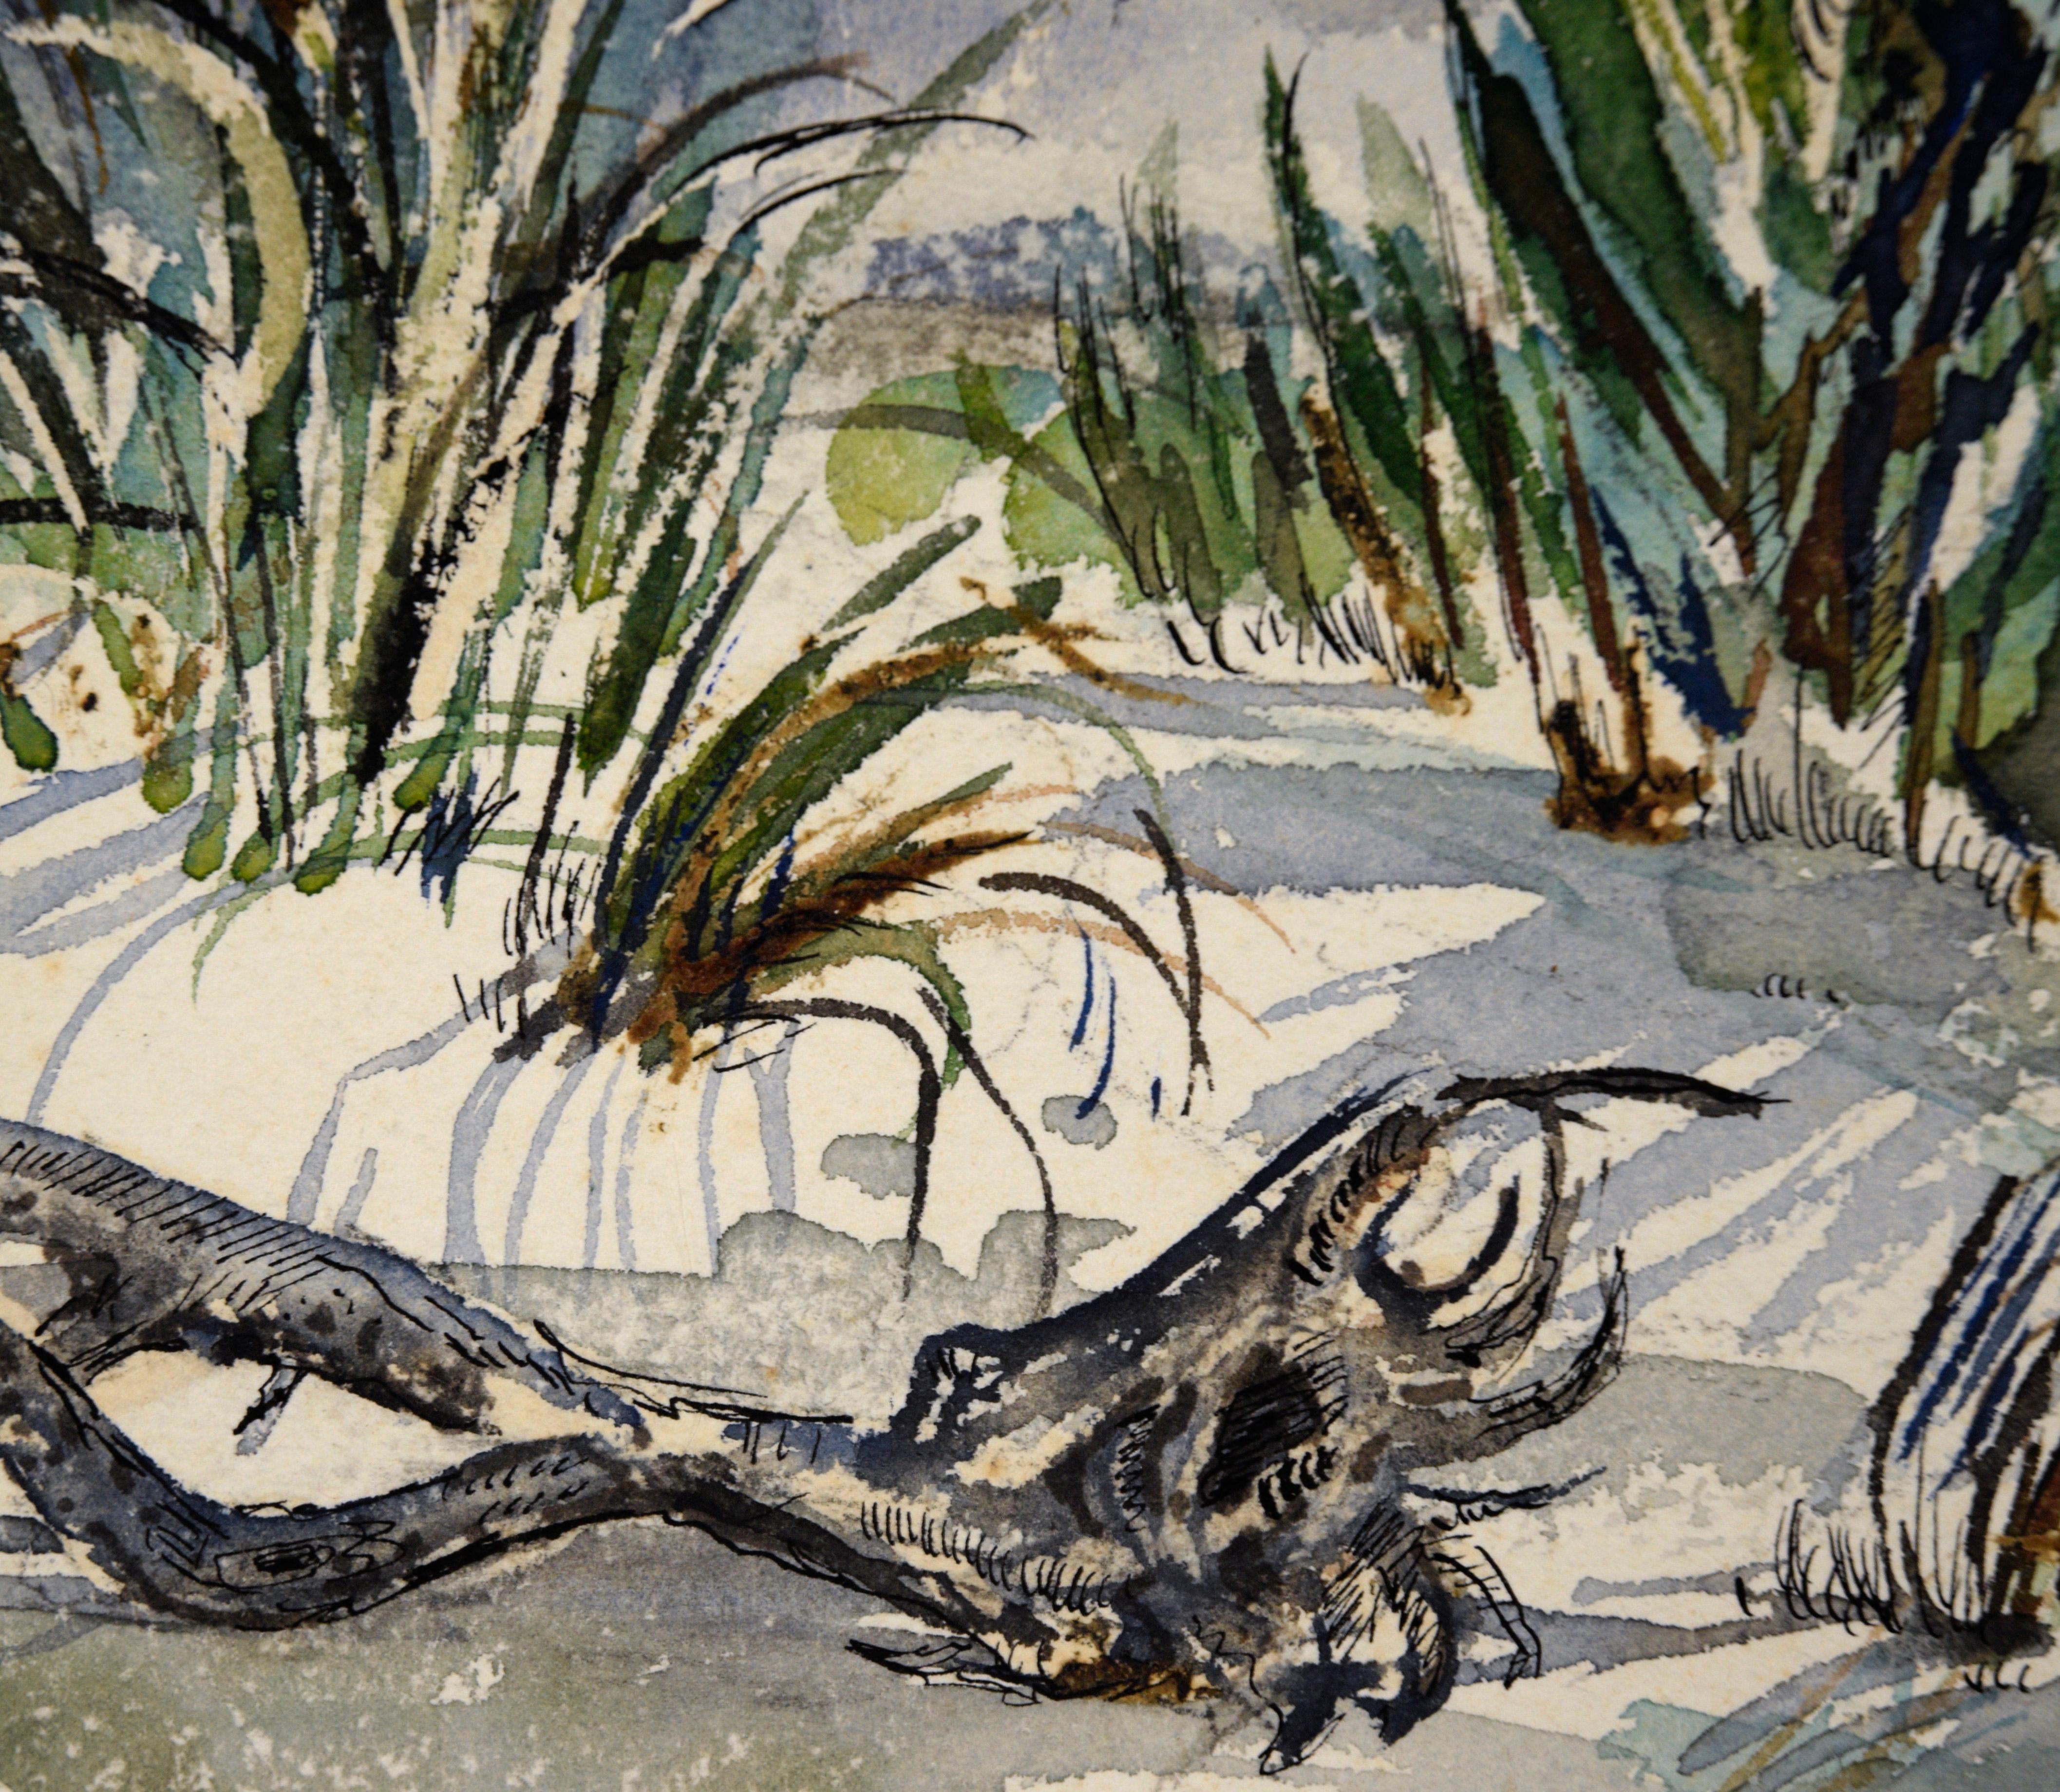 Captiva Island, Floride - Paysage de plage à l'aquarelle sur papier

Aquarelle détaillée d'une plage d'une île de Floride par l'artiste inconnu 